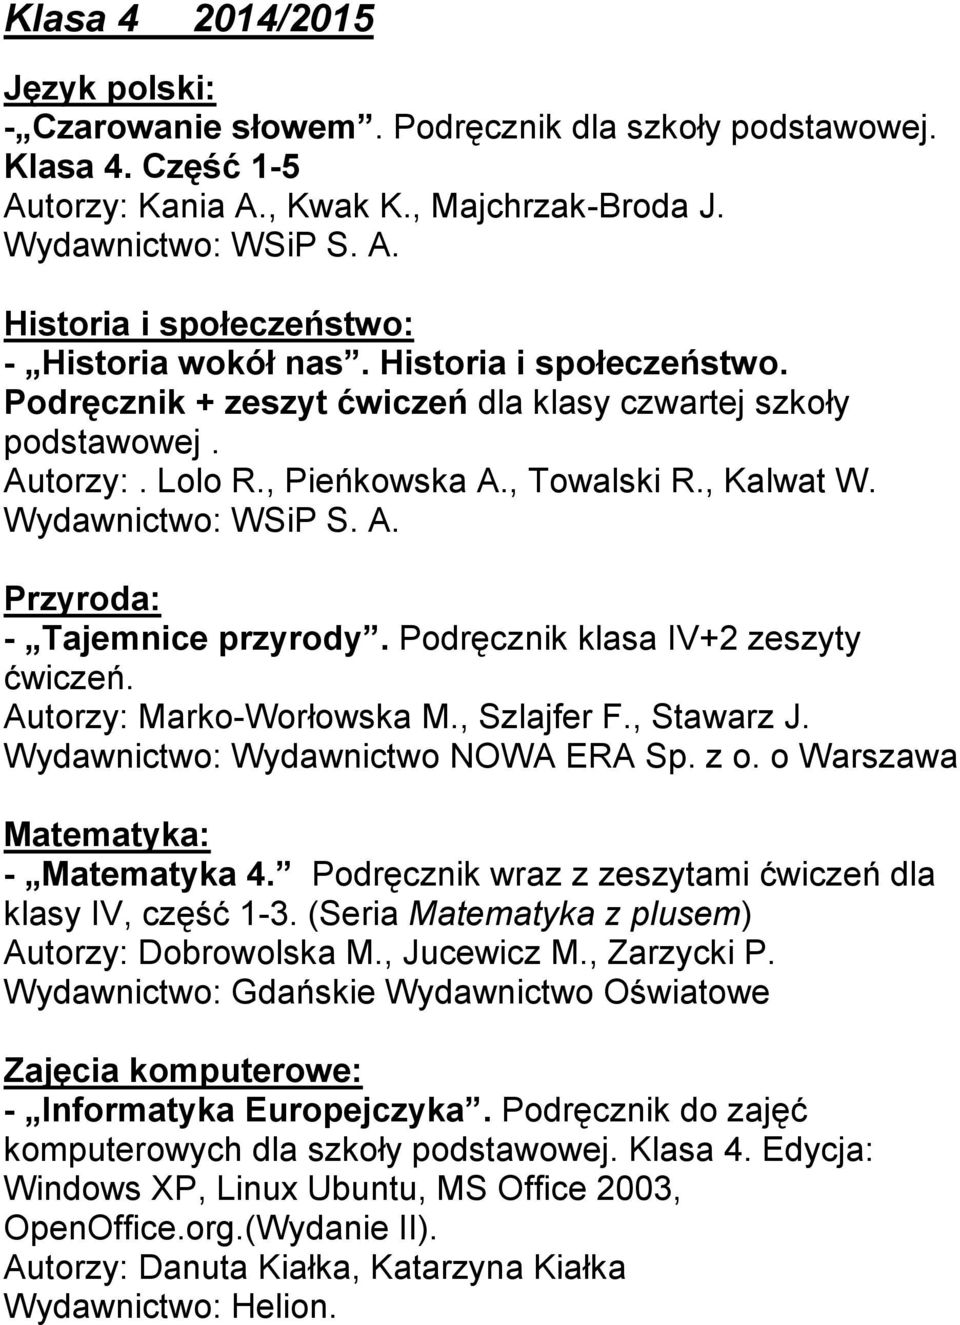 Podręcznik klasa IV+2 zeszyty ćwiczeń. Autorzy: Marko-Worłowska M., Szlajfer F., Stawarz J. Wydawnictwo: Wydawnictwo NOWA ERA Sp. z o. o Warszawa Matematyka: - Matematyka 4.